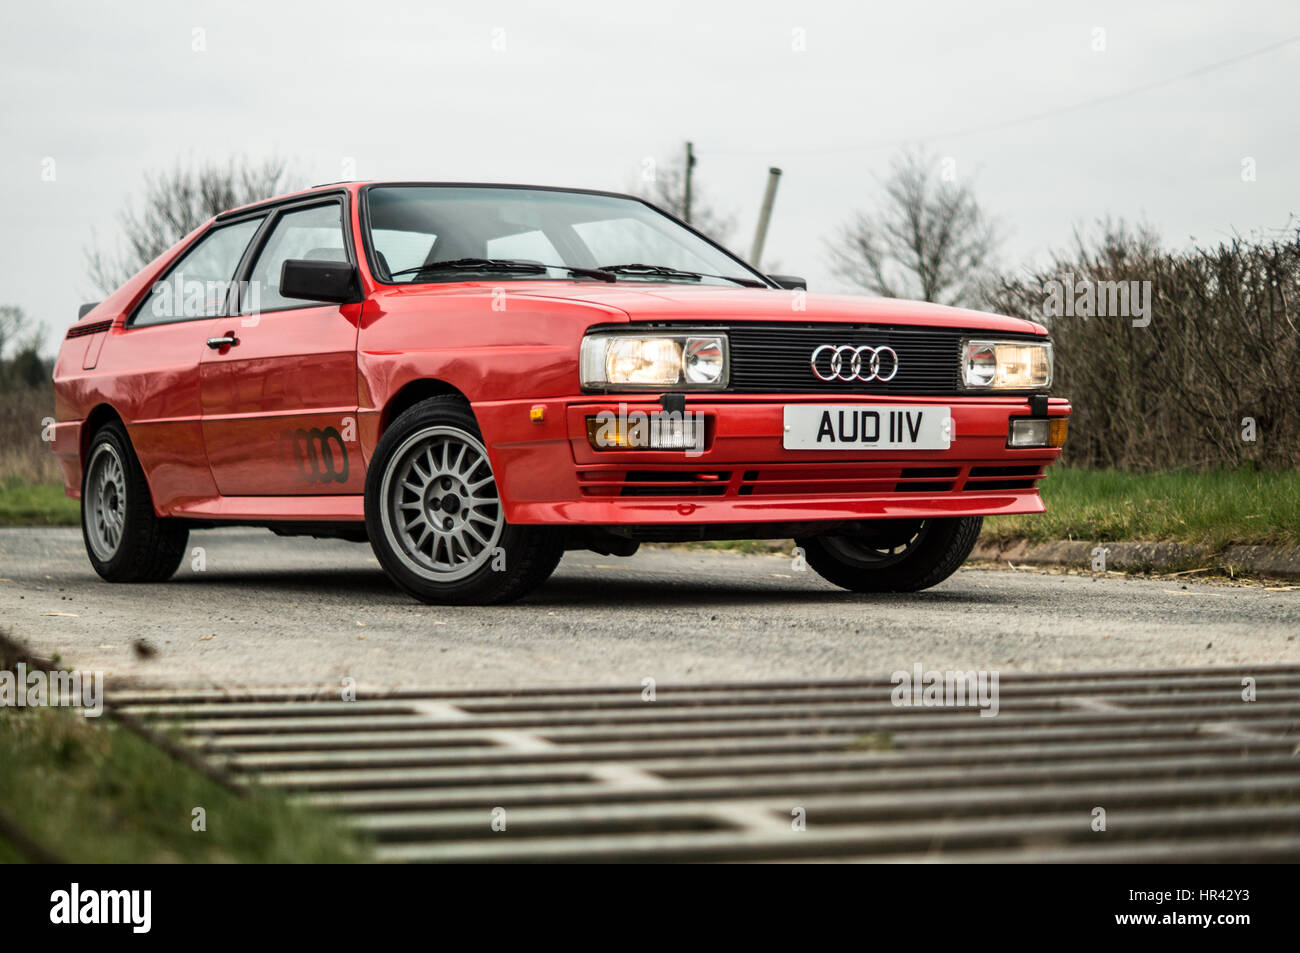 Audi UR Quattro in rosso. Foto Stock